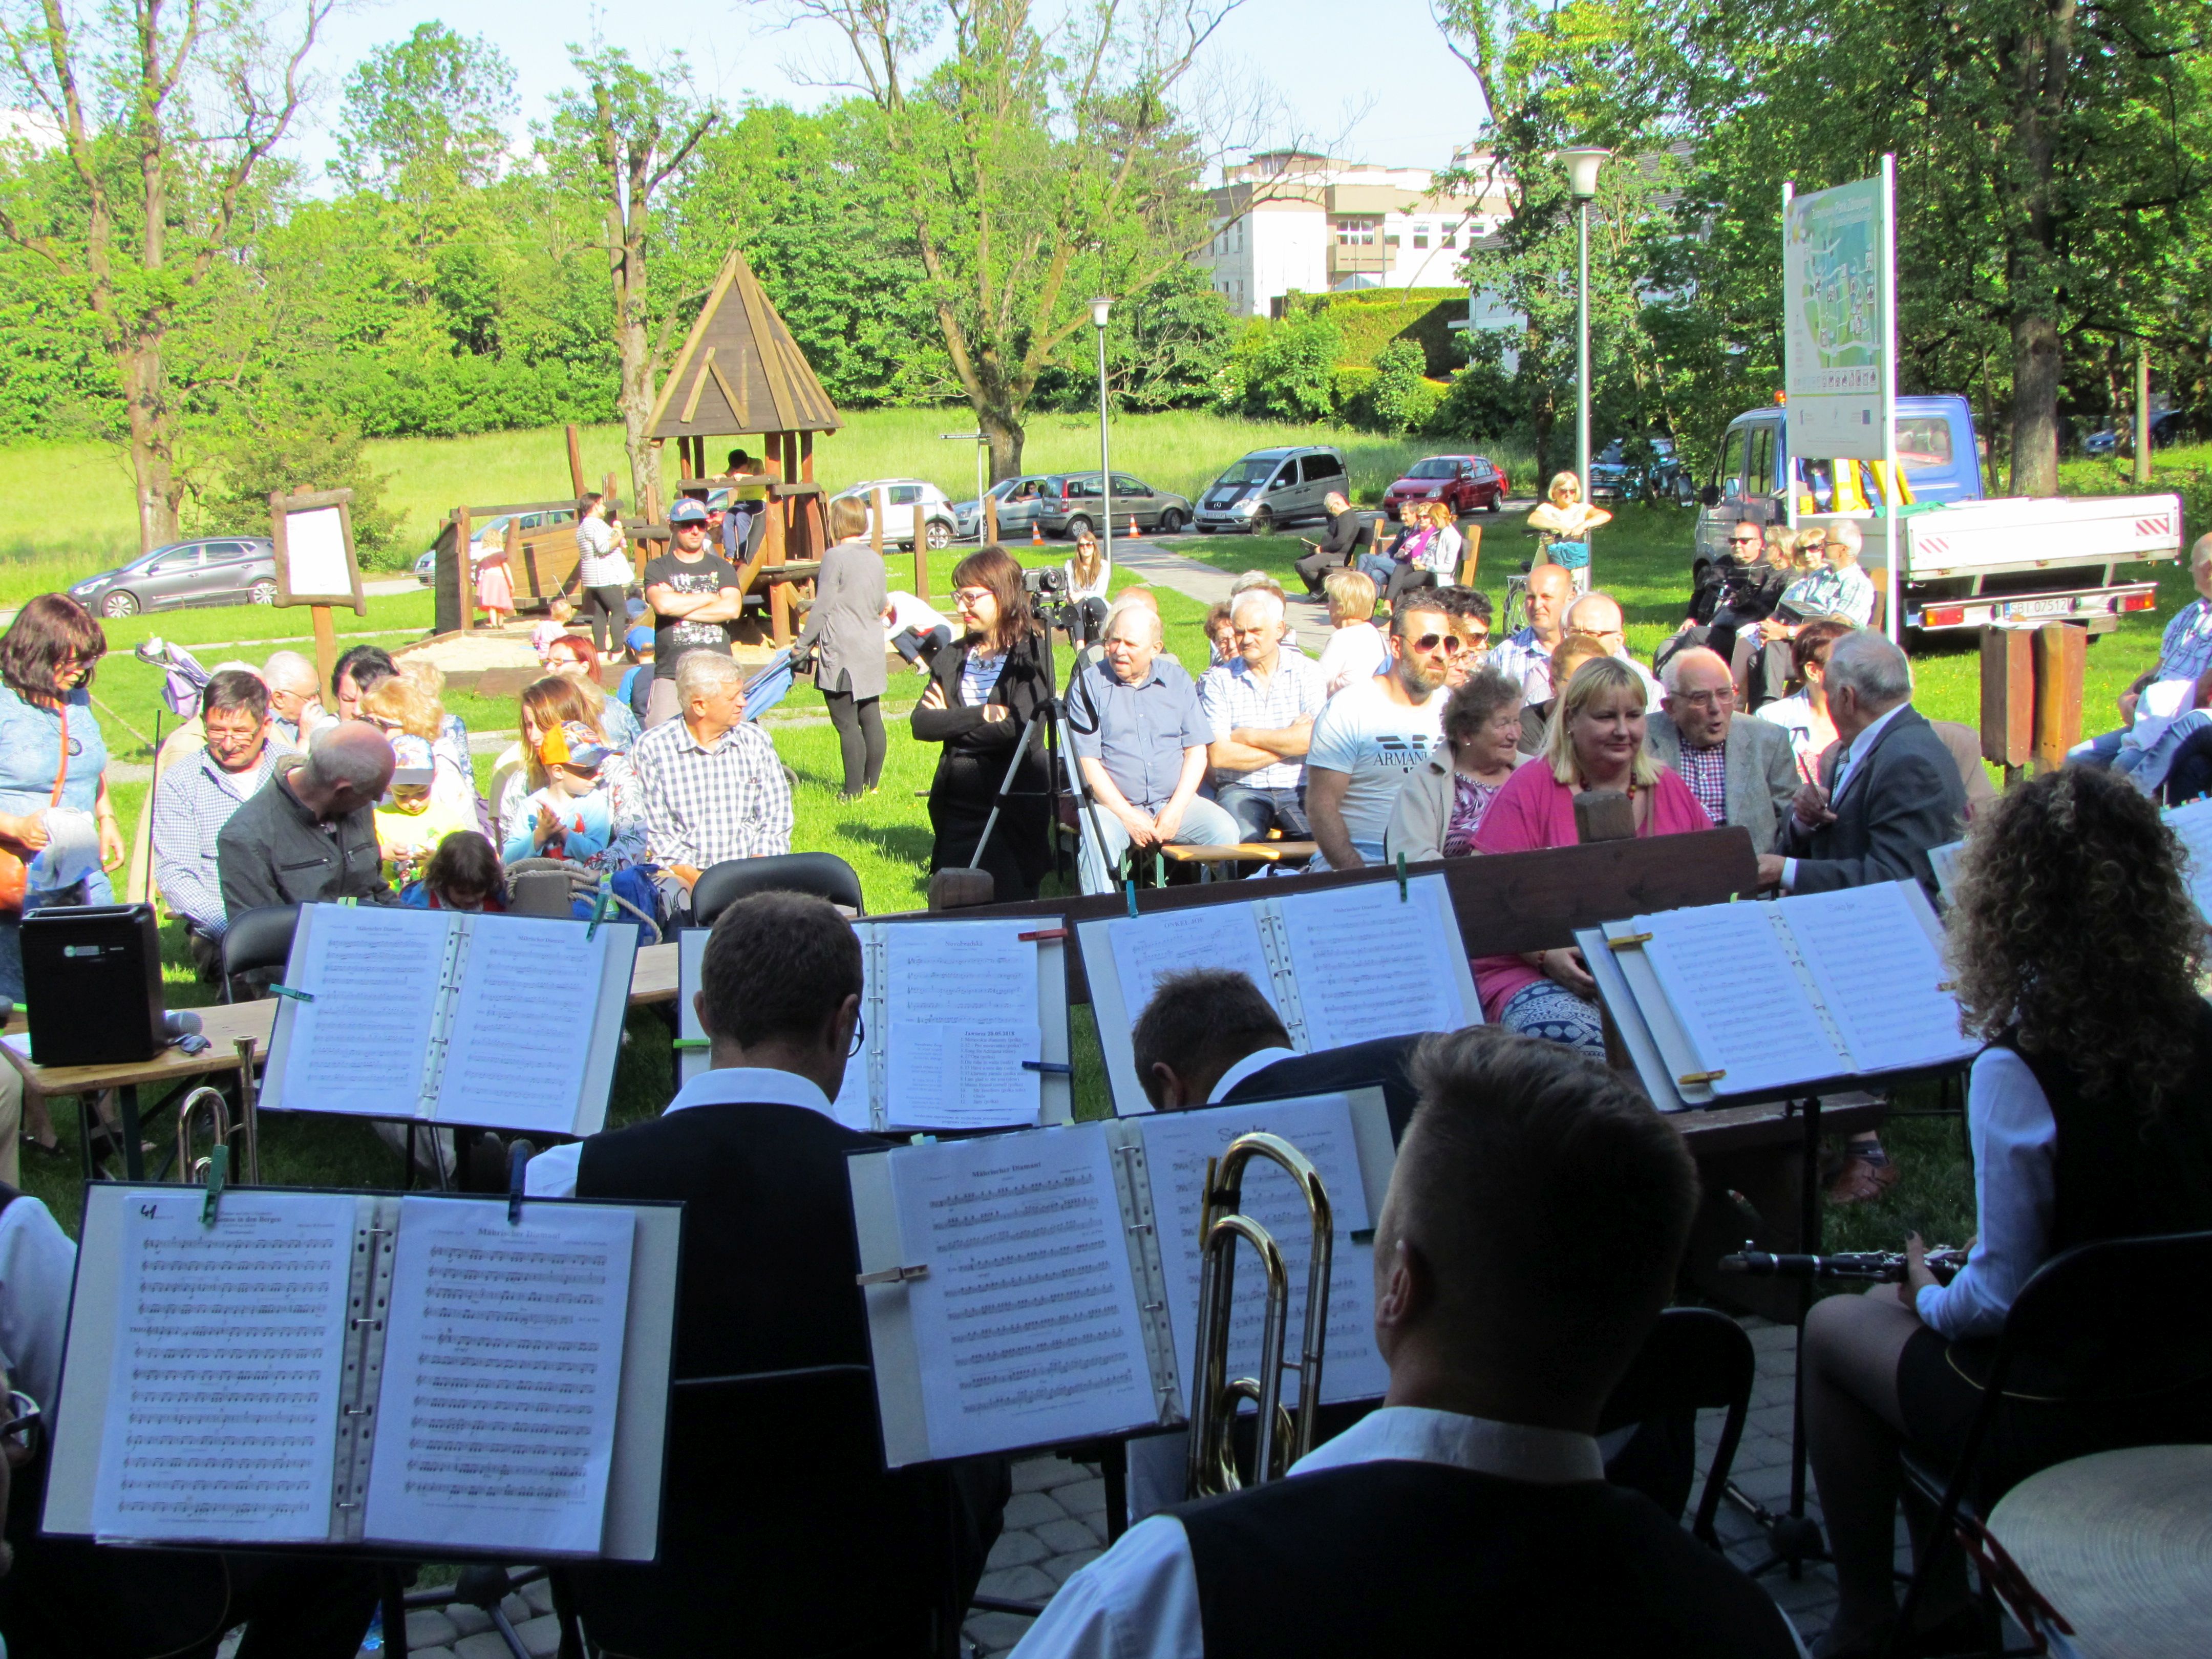 Koncert Orkiestr Dętych, koncertująca orkiestra przy Tężni Zdrojowej, wokół zgromadzona publiczność